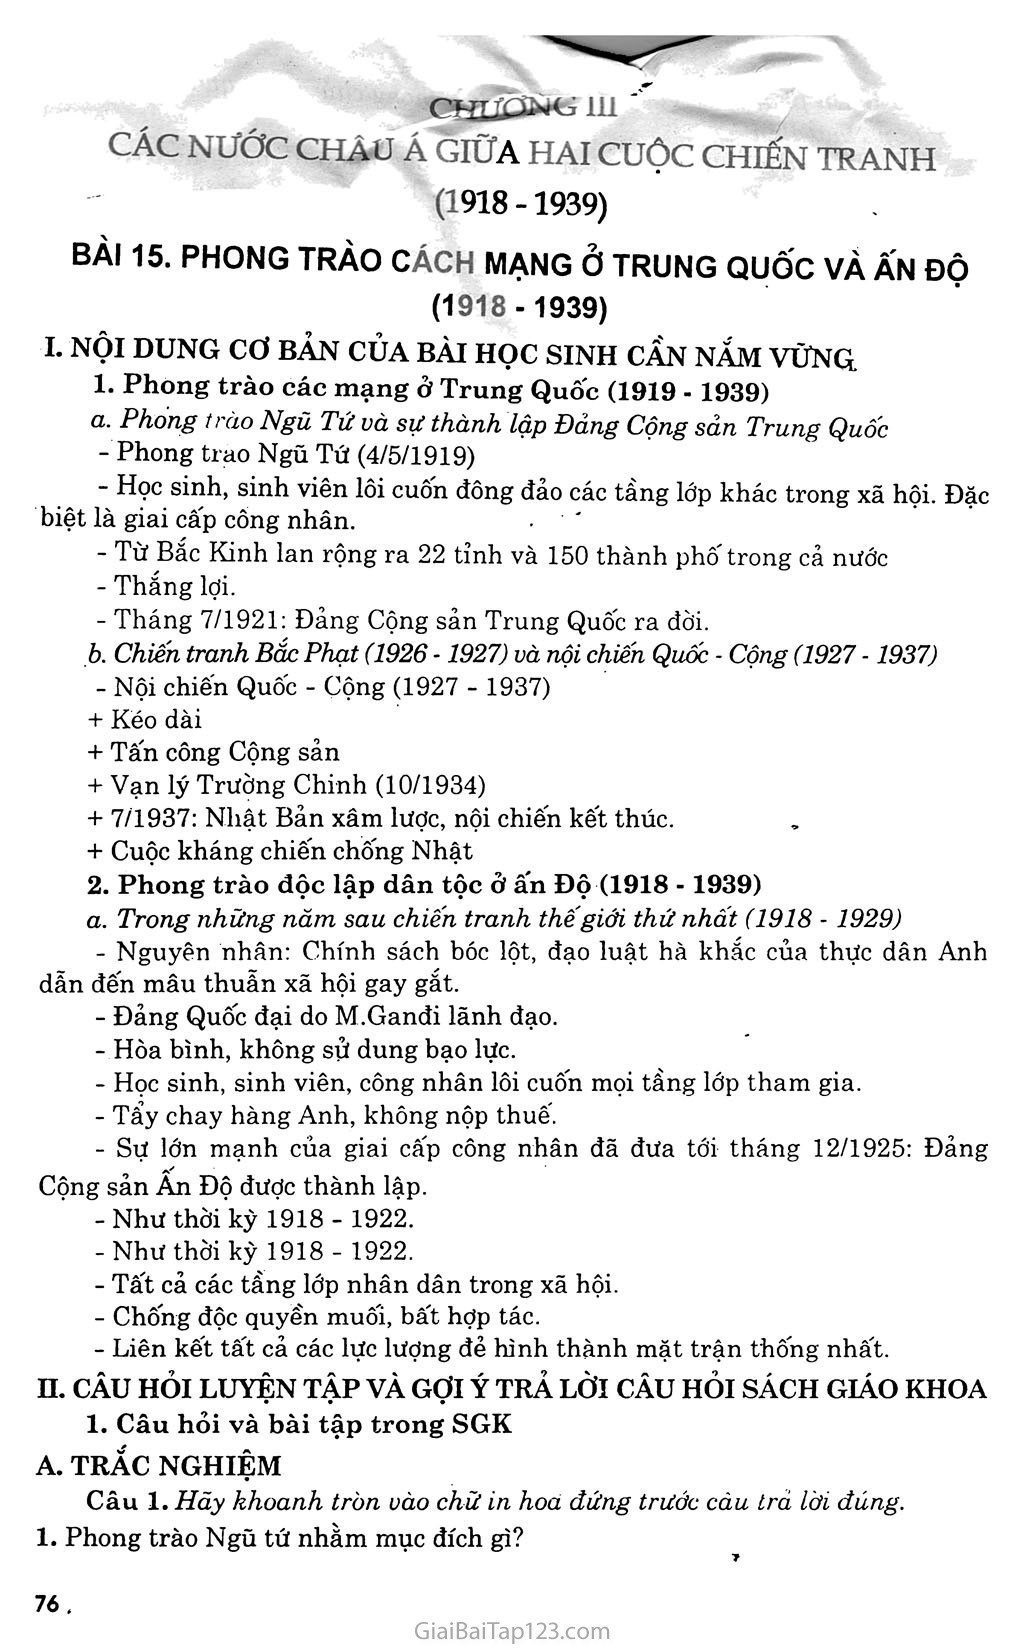 Bài 15: Phong trào cách mạng ở Trung Quốc và Ấn Độ (1918 - 1939) trang 1